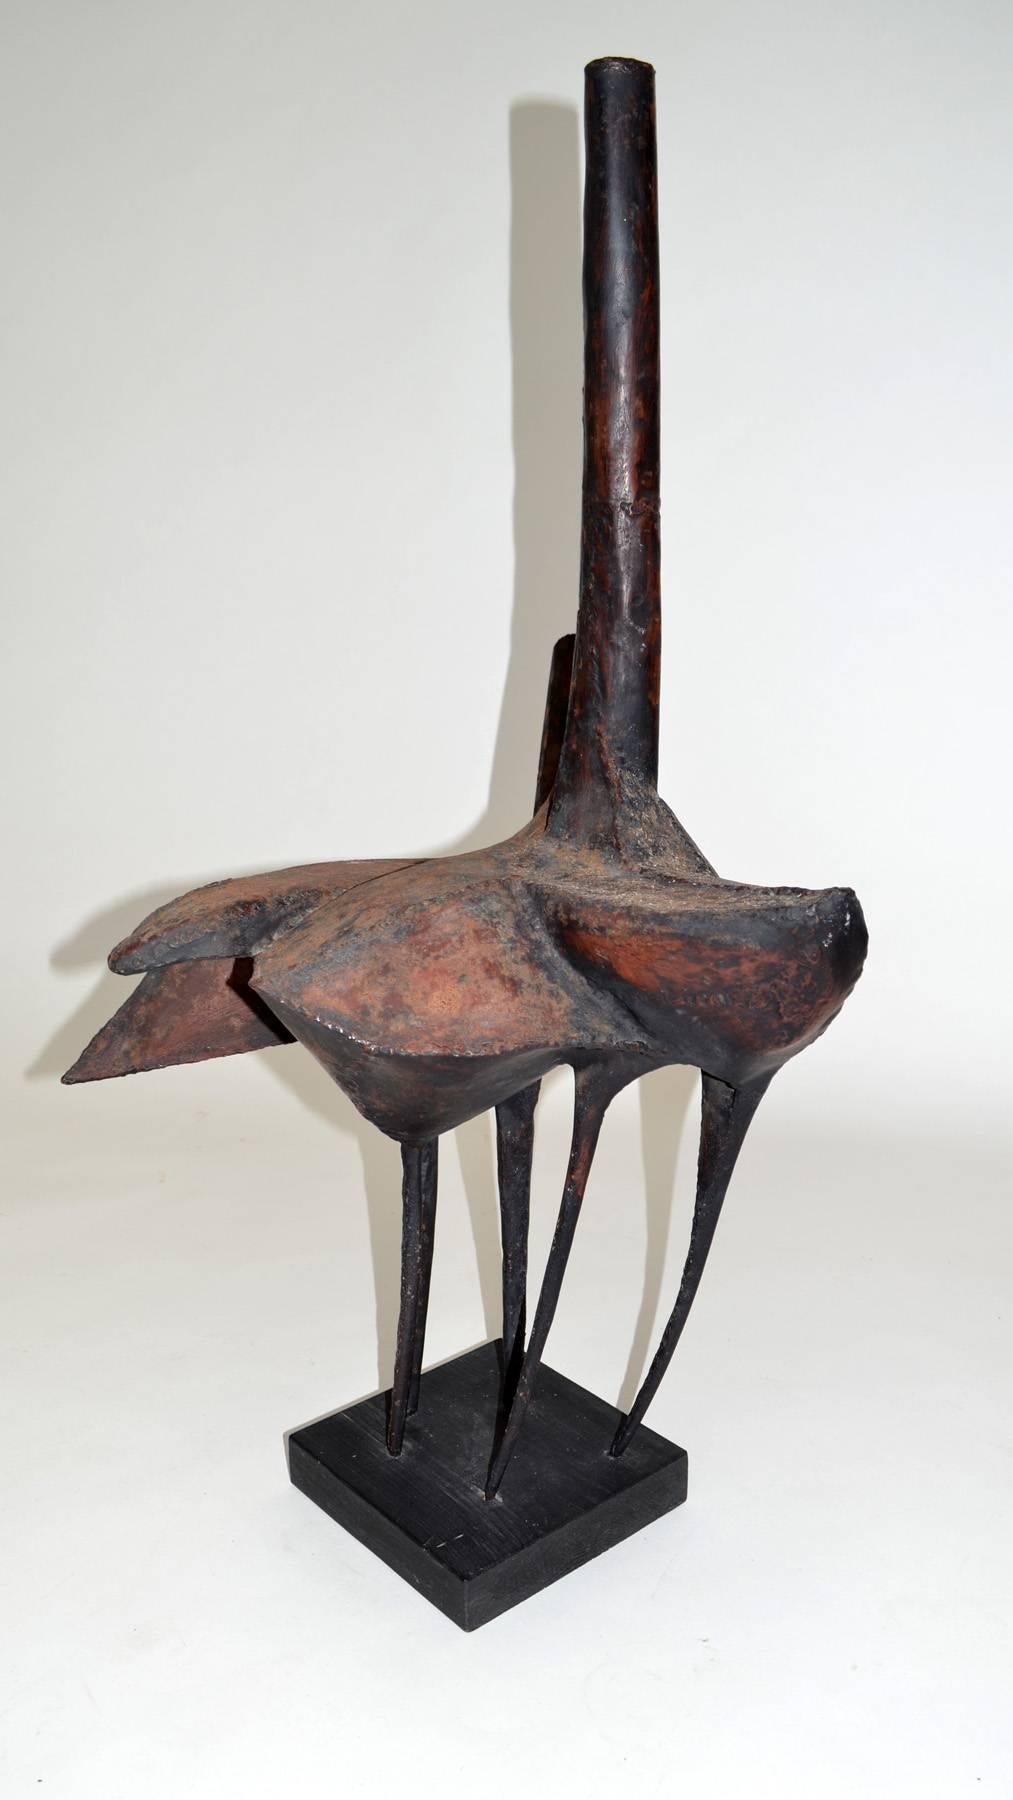 Abstract Brutalist Sculpture Robert Klein Mid-Century Modern (amerikanisch)